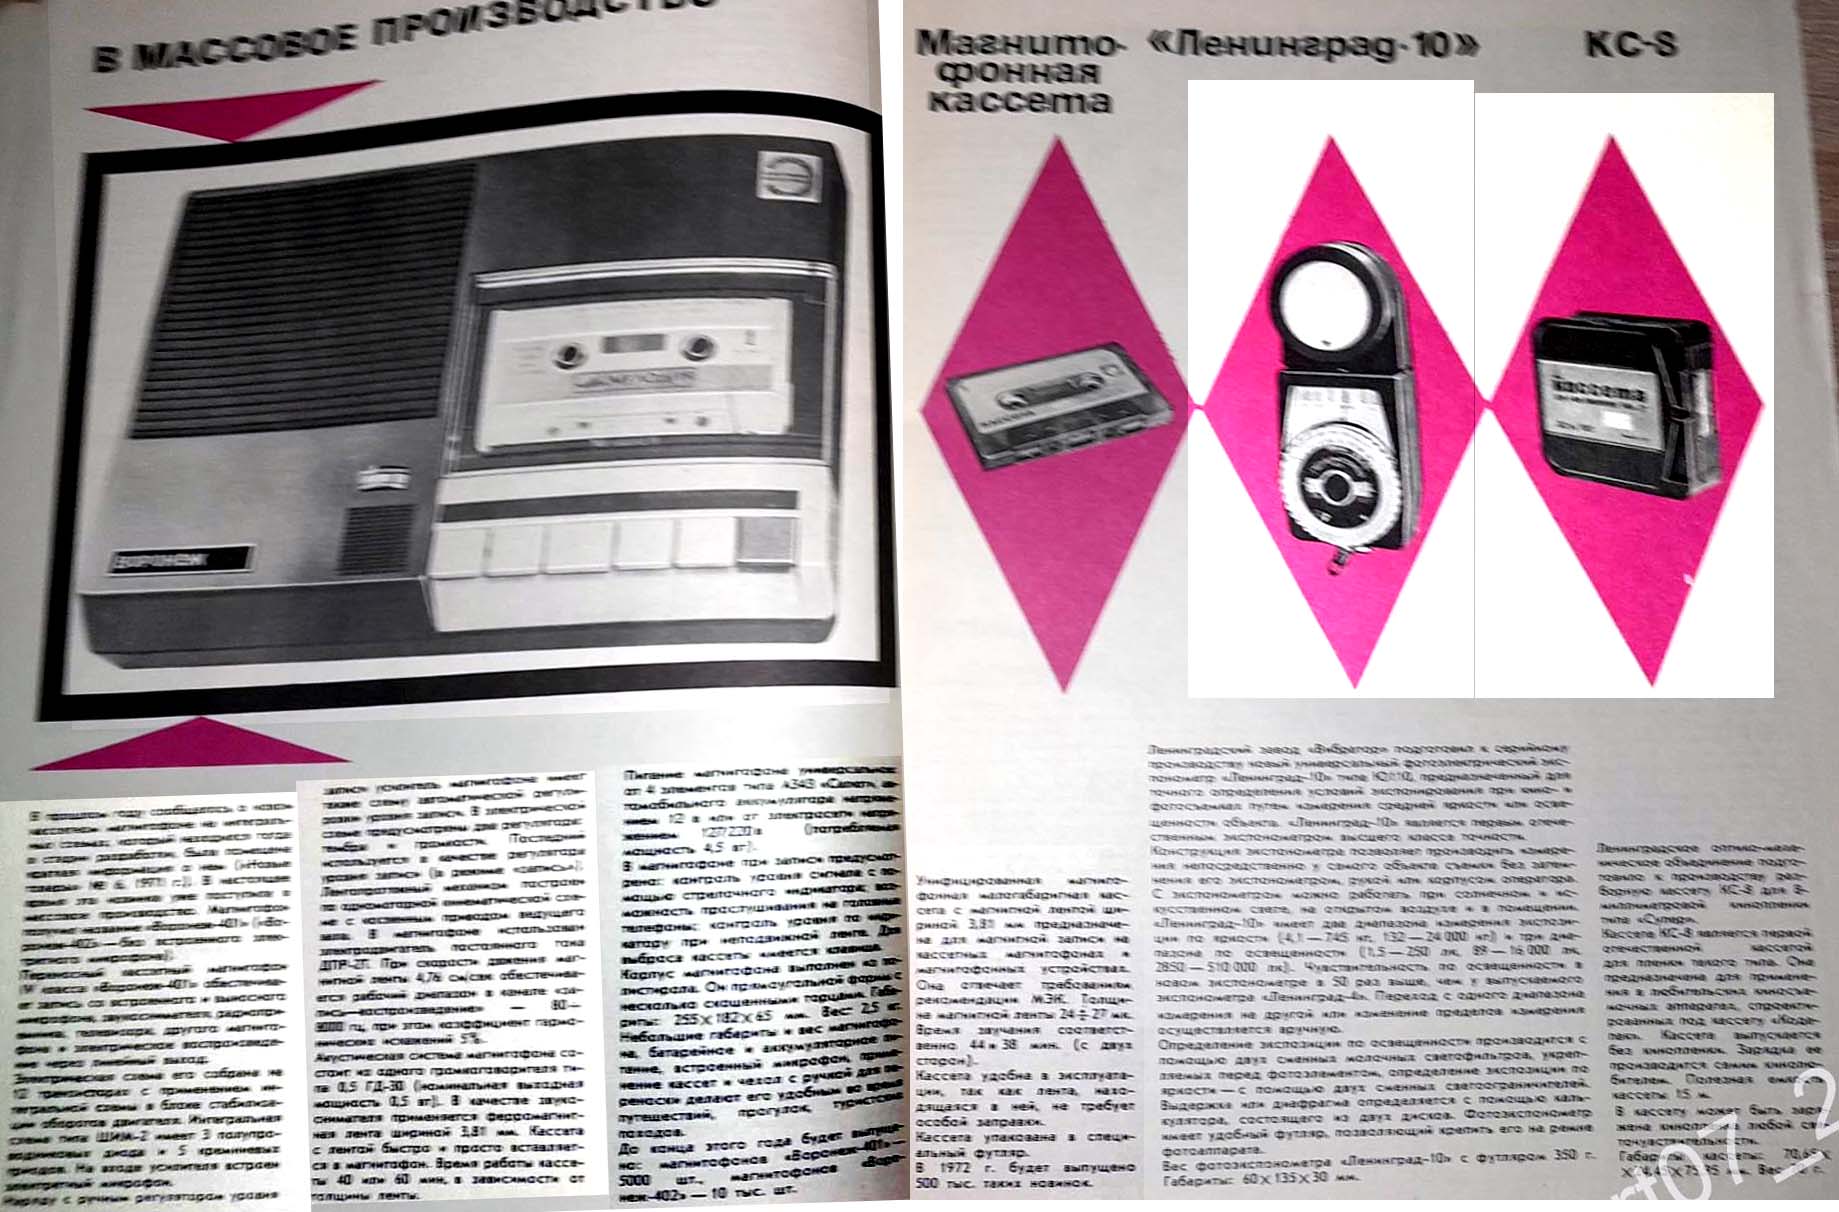 Журнал "Новые Товары" 1971 год: - Первые отечественные кассетные моно магнитофоны с горизонтальным расположением и загрузкой кассет